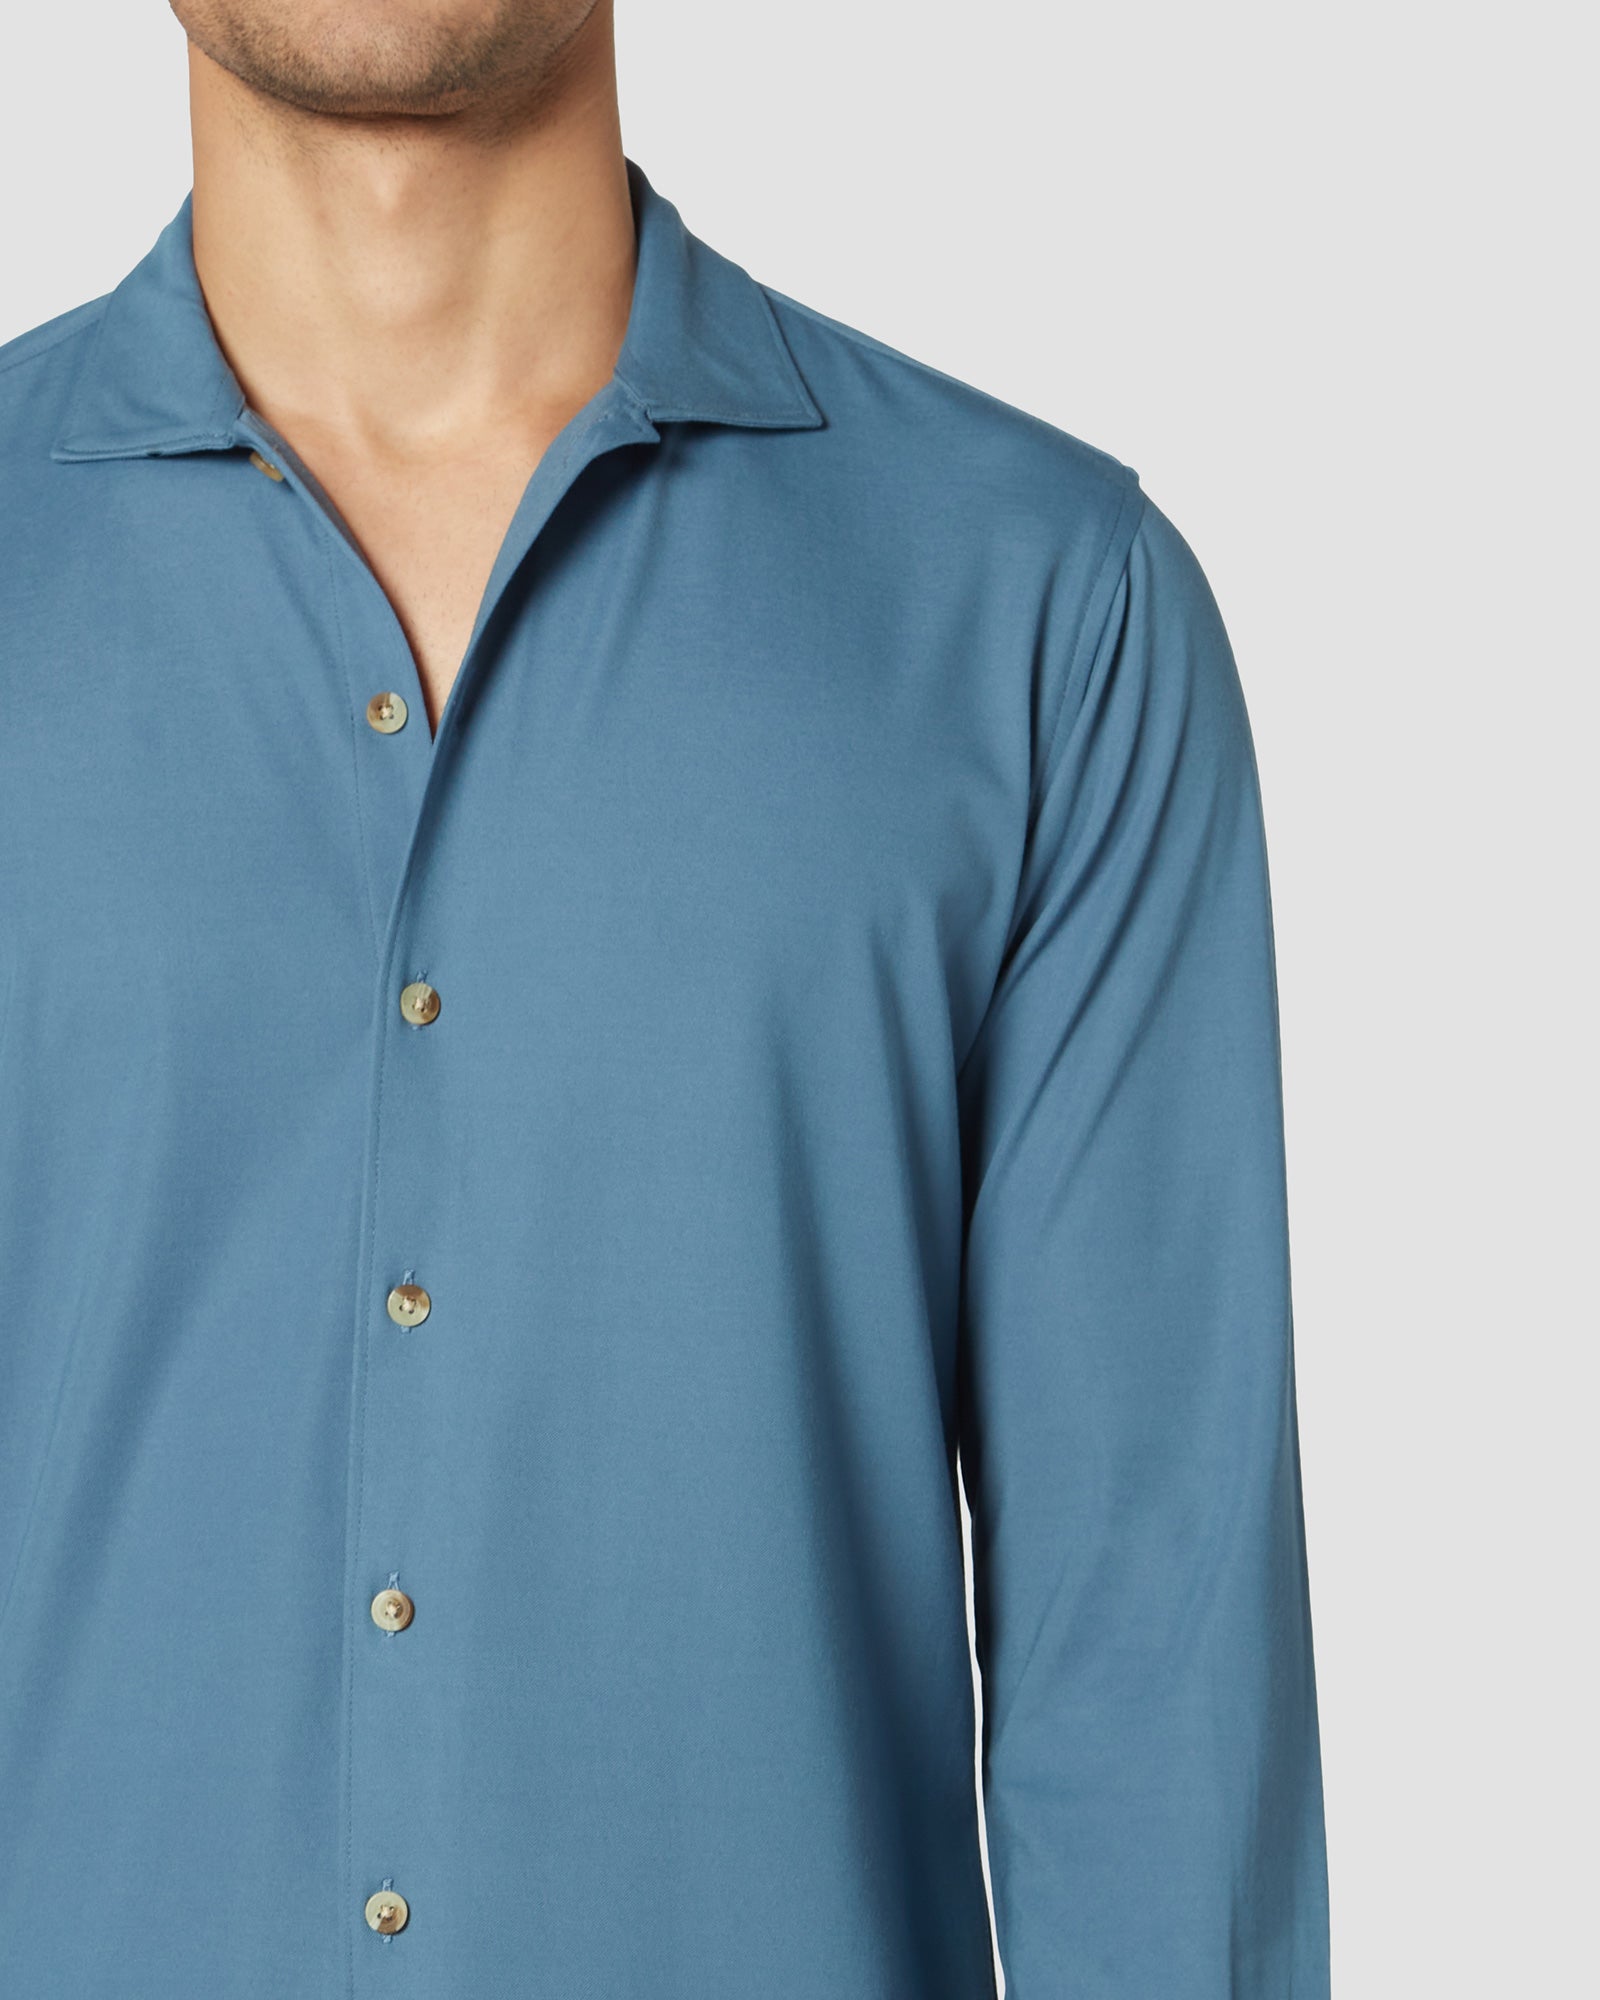 Bombay Shirt Company - Lapis Lazuli Knit Shirt